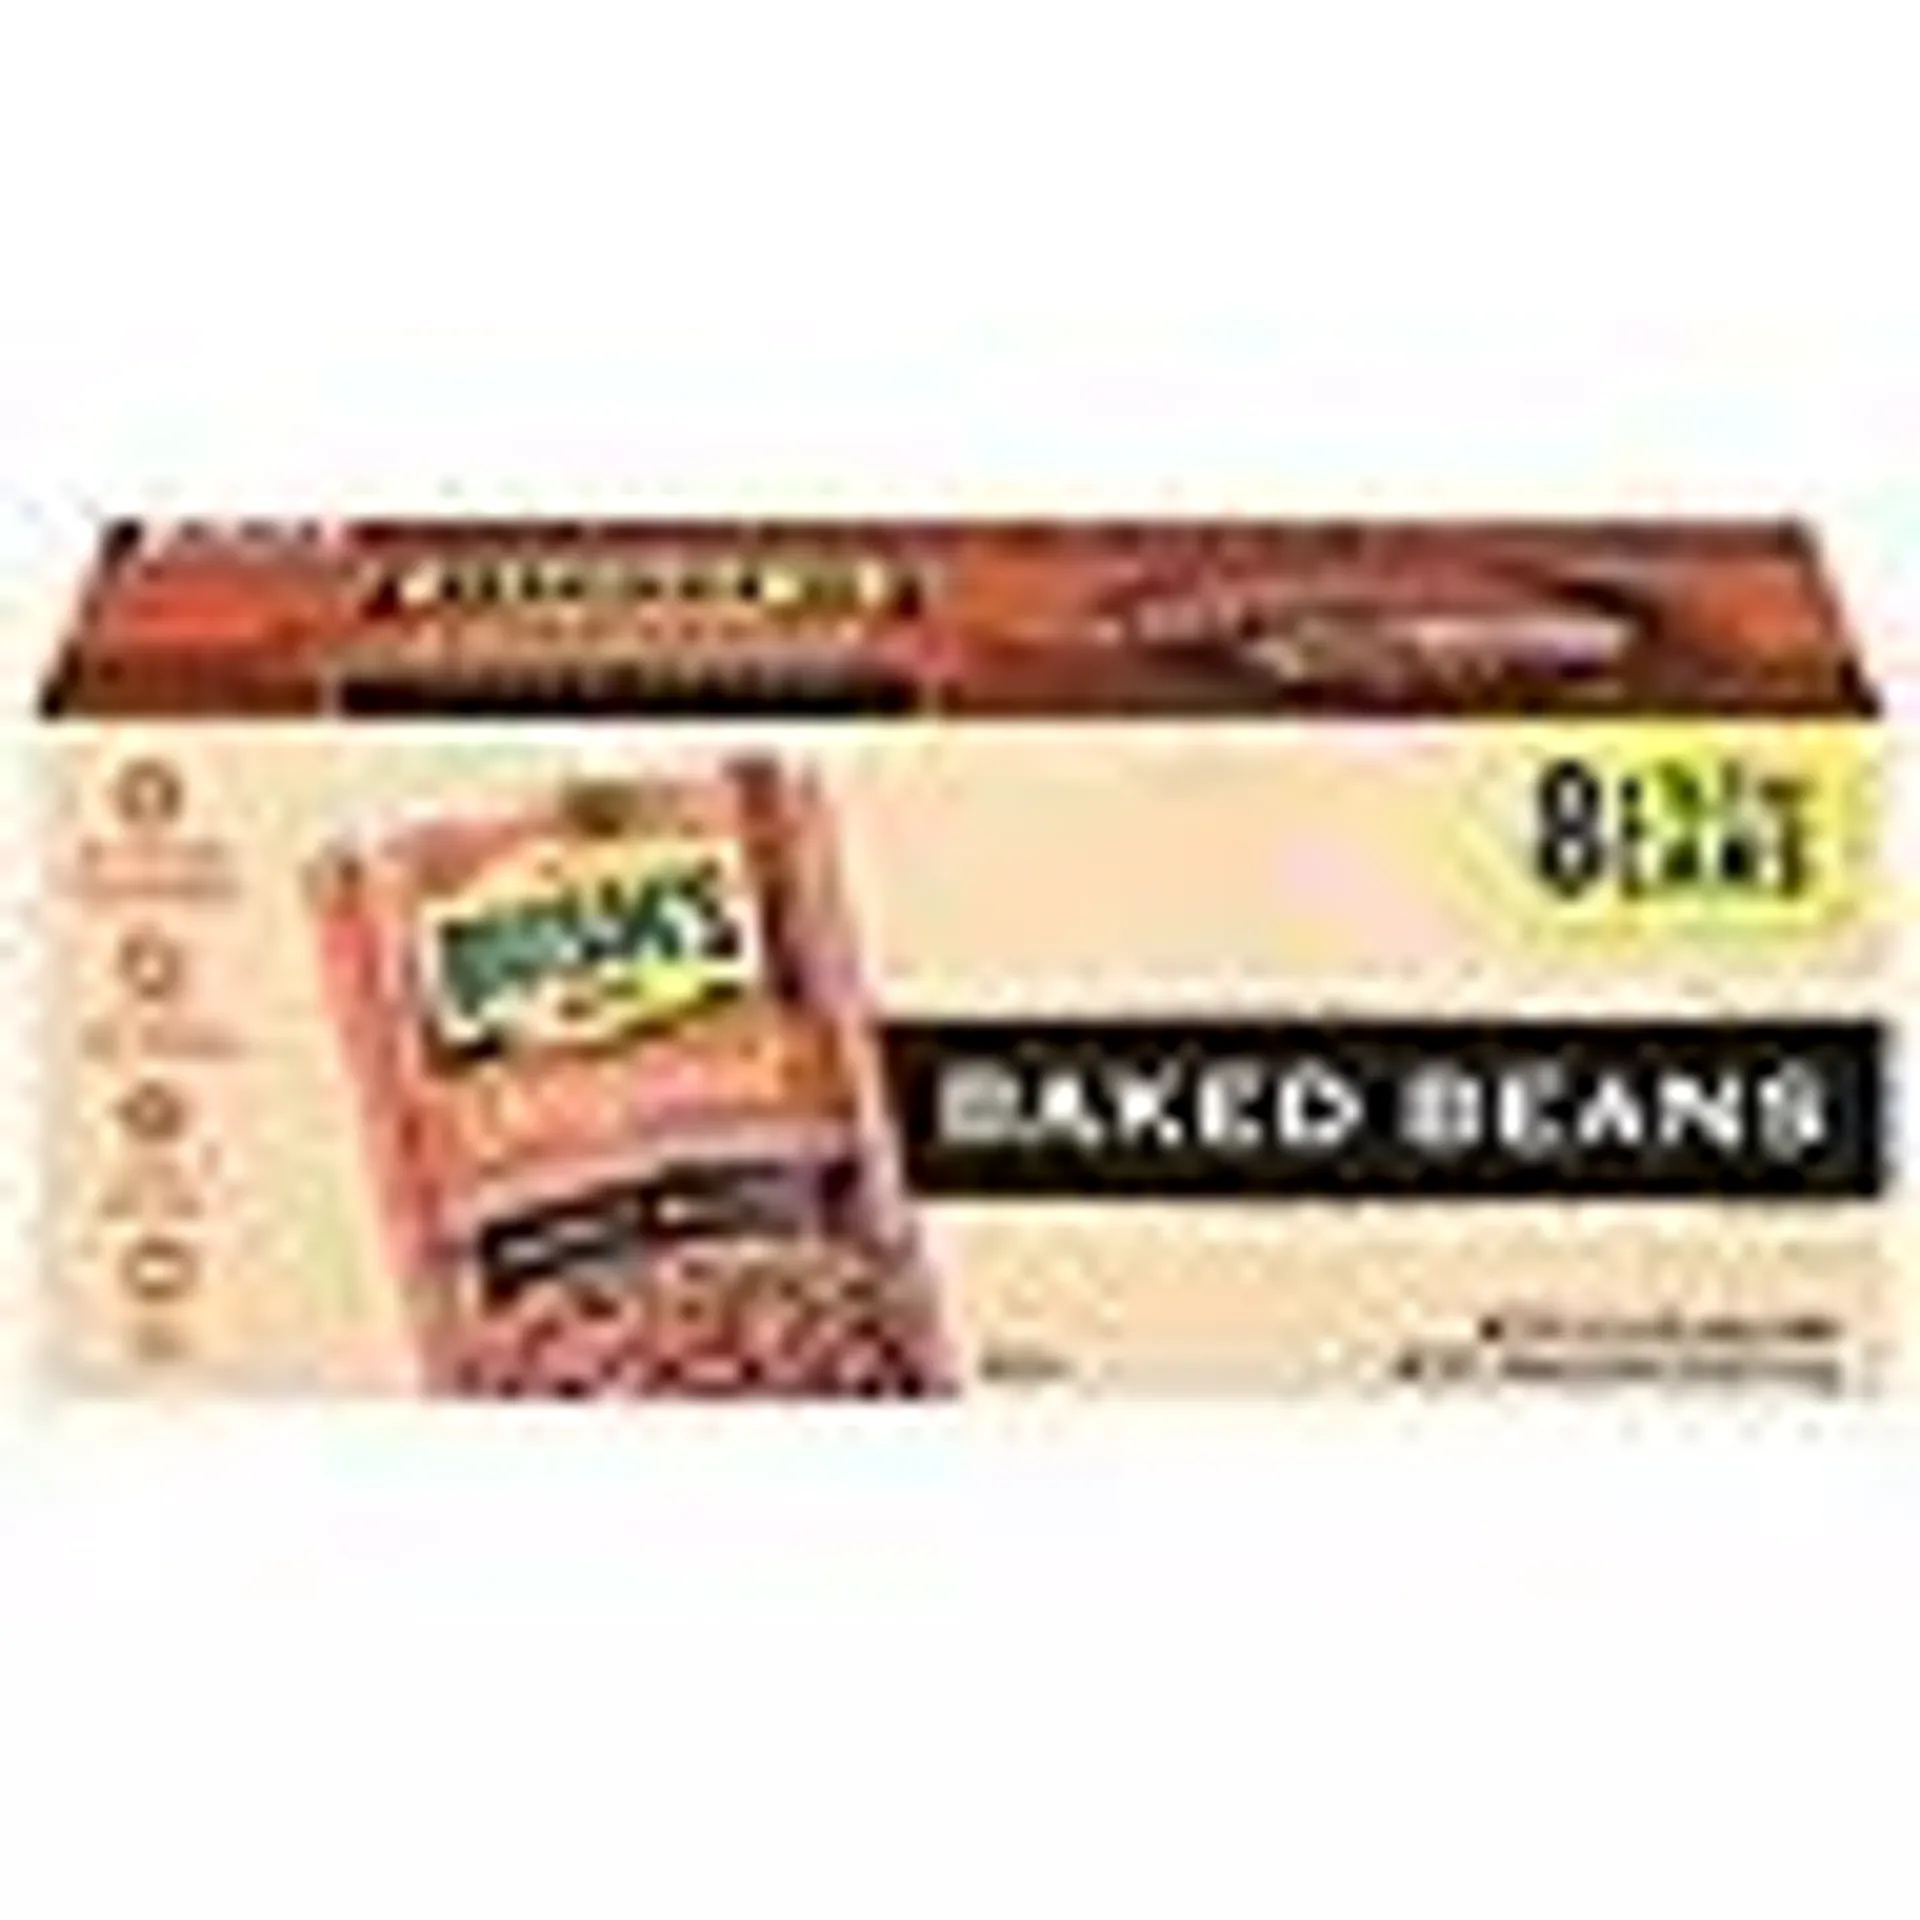 Bush's Original Baked Beans, 16.5 oz, 8 ct.